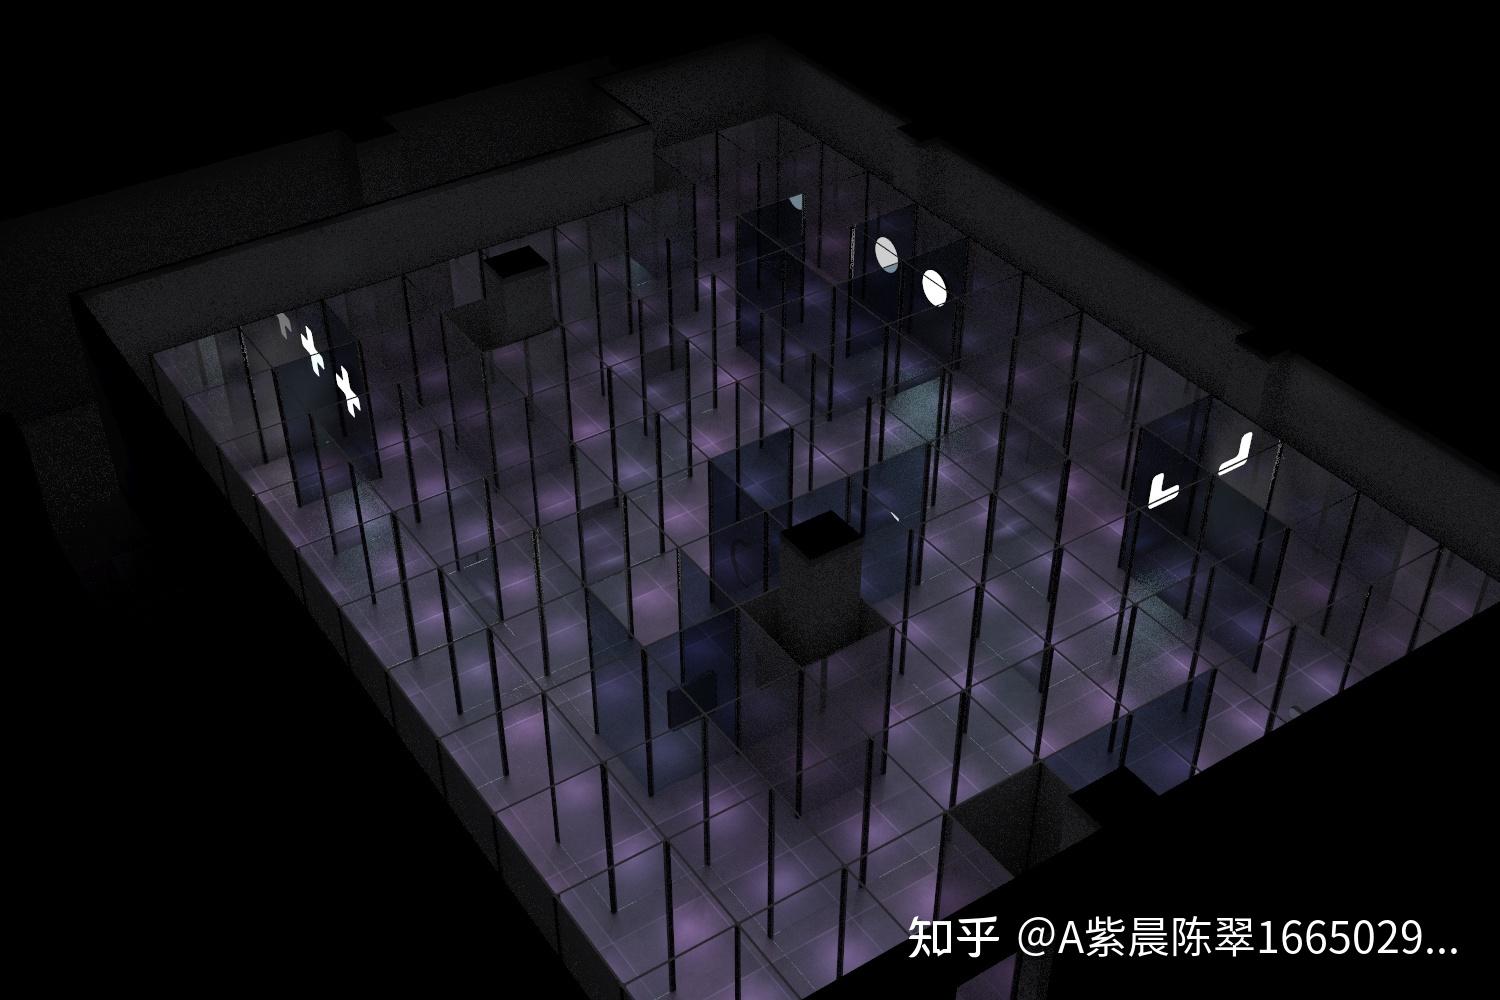 模仿上海玻璃博物馆的玻璃迷宫做一个效果图